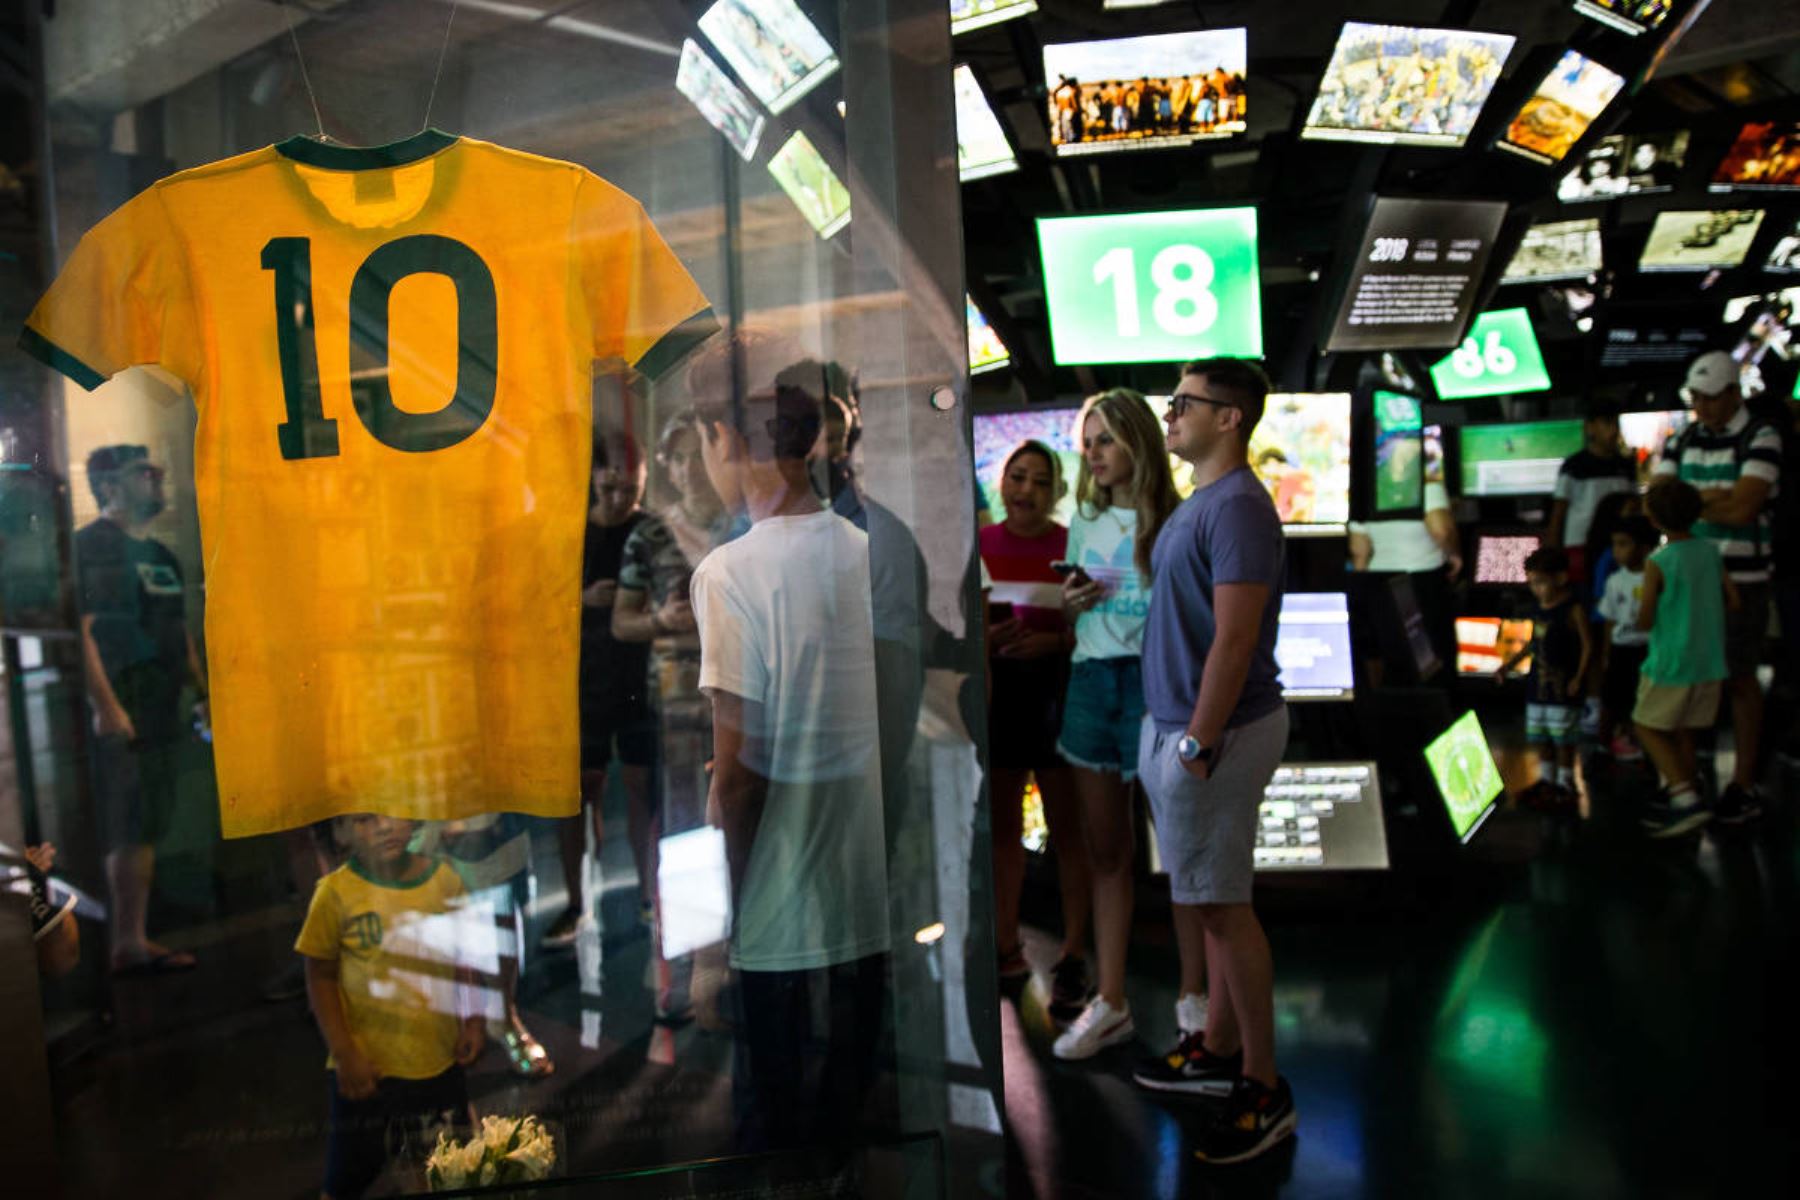 Los visitantes del Museo del Fútbol de Sao Paulo observan y fotografían la legendaria camiseta con el número 10 de Pelé, que usó en la Copa del Mundo de 1970. Foto: Zanone Fraissat/Folhapress